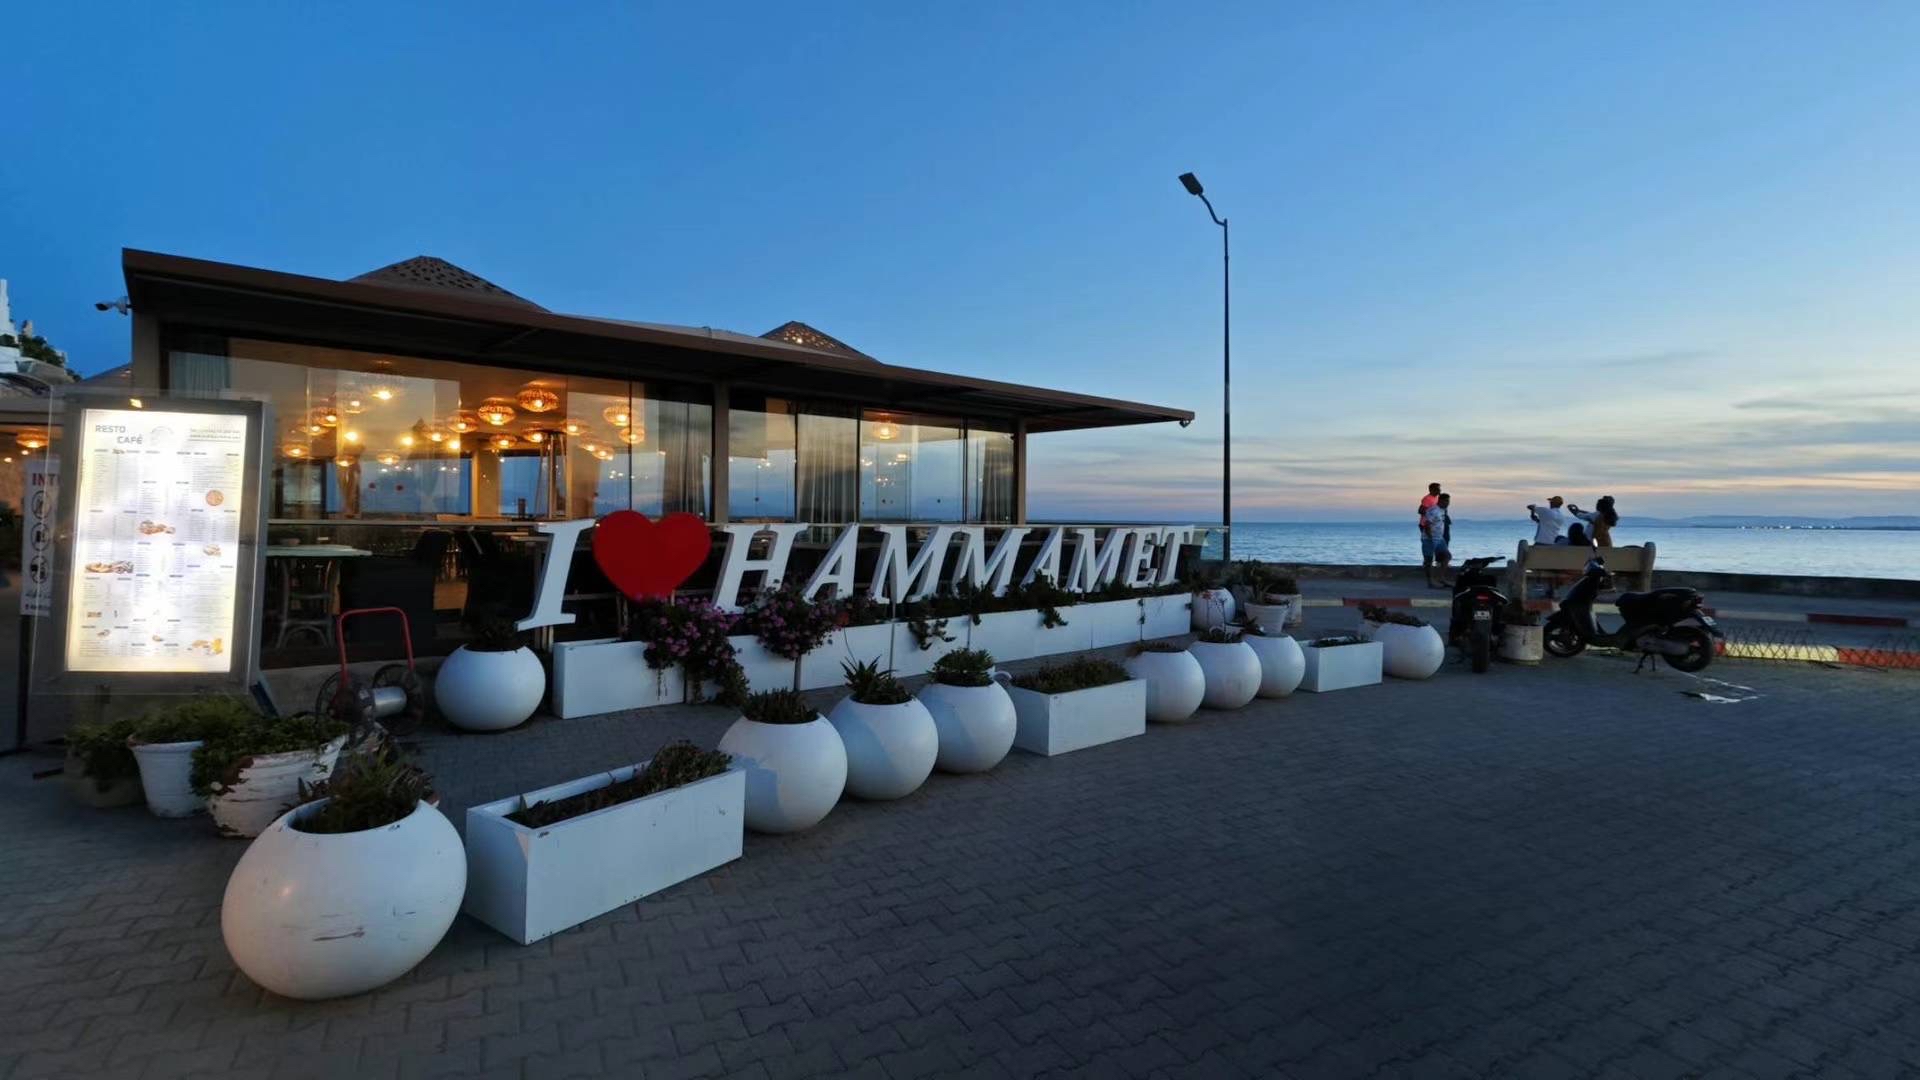 I ❤️ Hammamet 餐厅☕️🍧🍔🍹🍽️